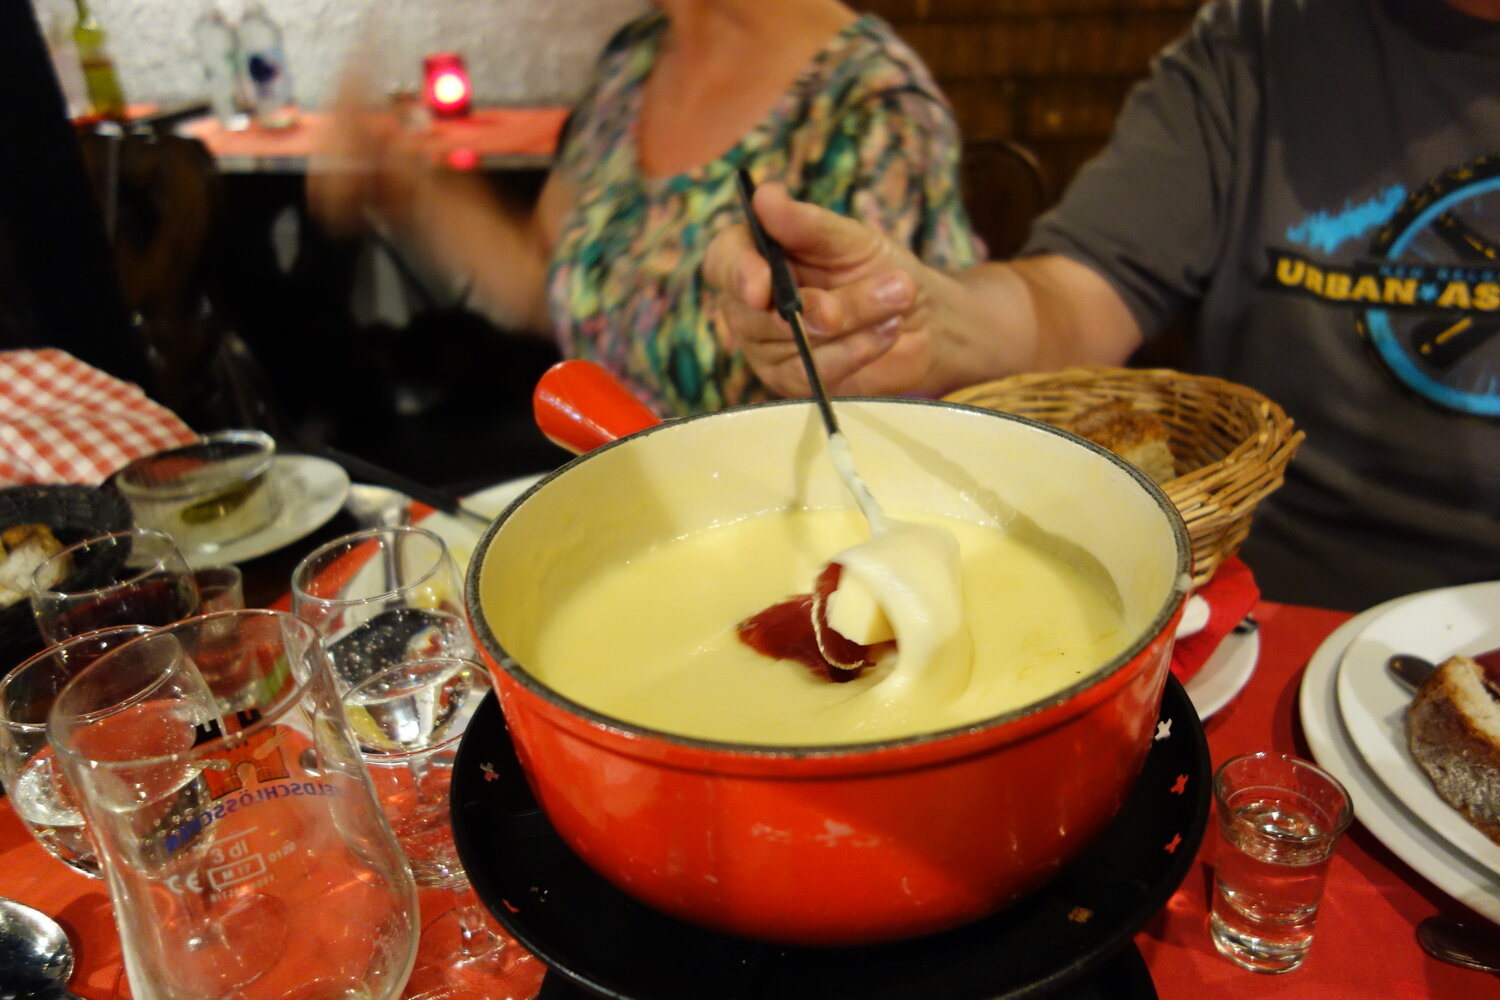 Cheese Fondue Savoyarde - Taste of Savoie